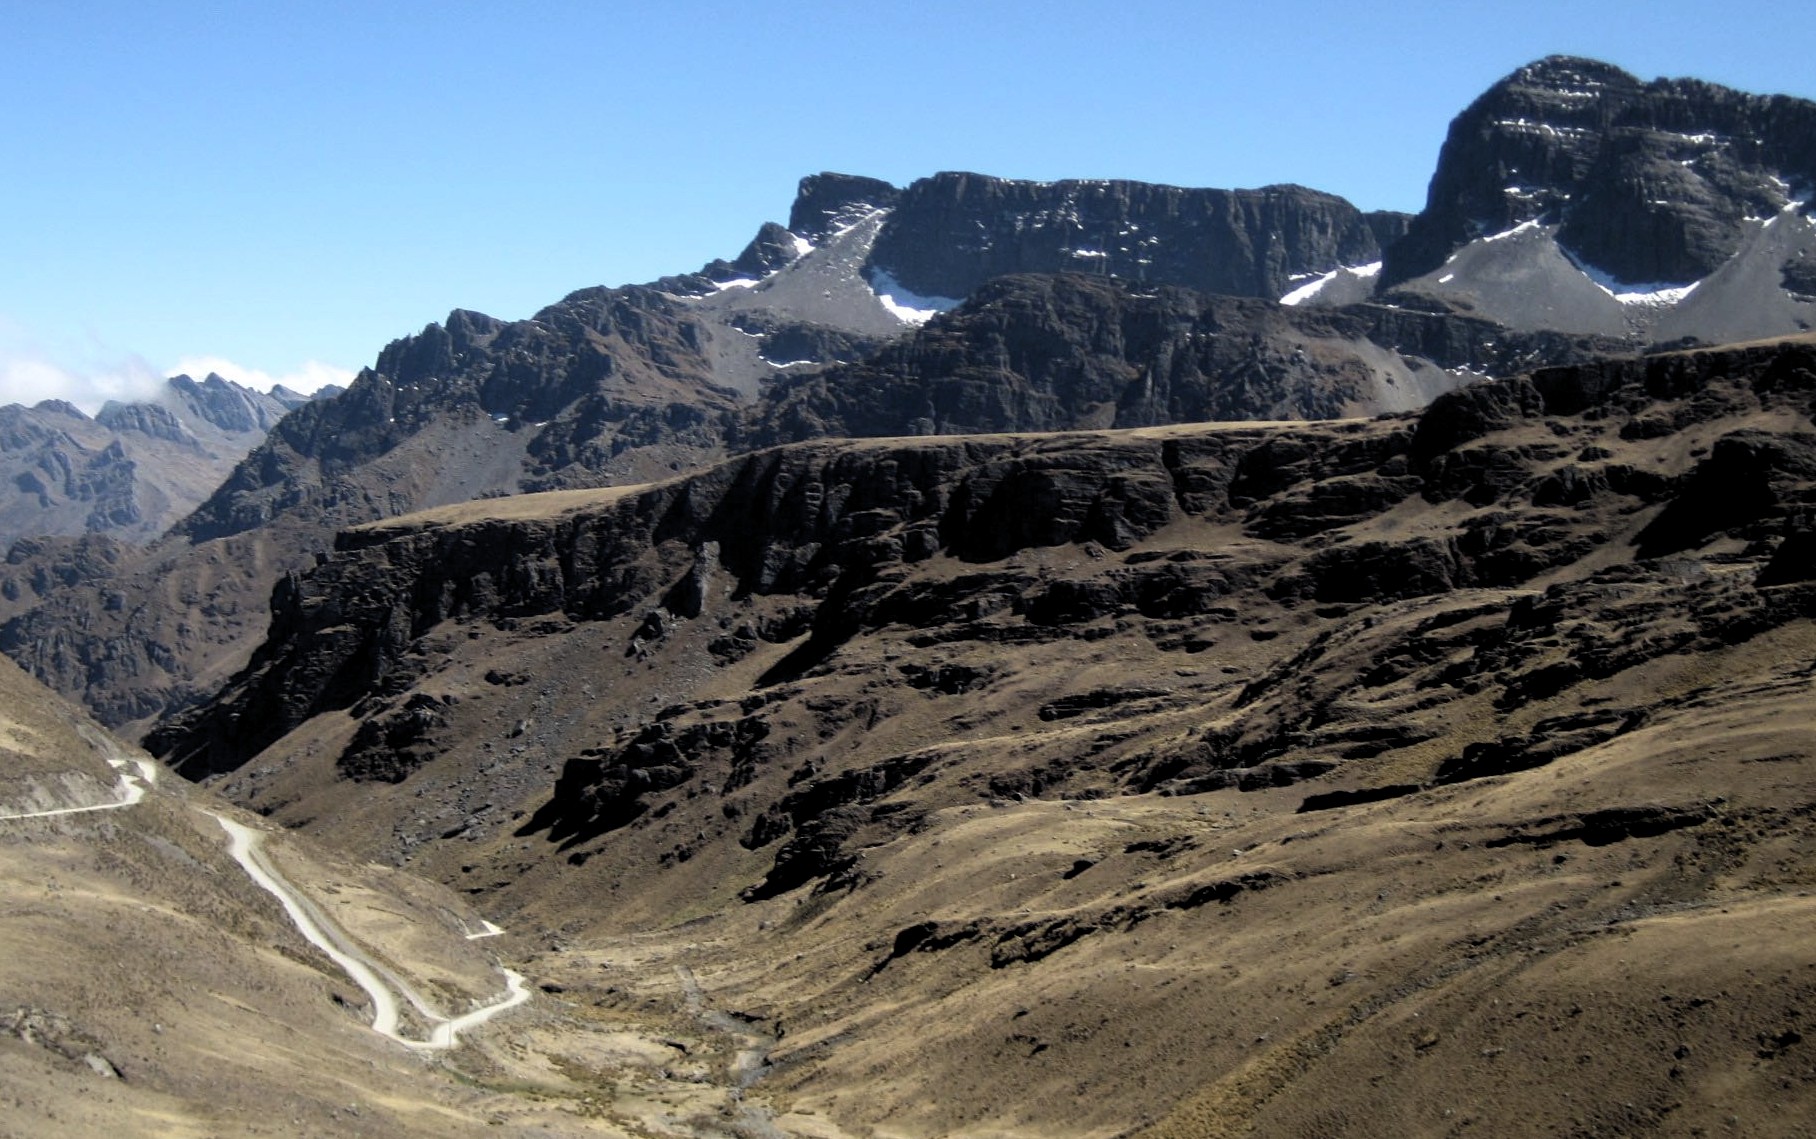 Travesía La Paz - Tunari, montañas con nieve saliendo de Morochata, viaje de Momo y María en una KLR-650 el 12 de setiembre del 2012.